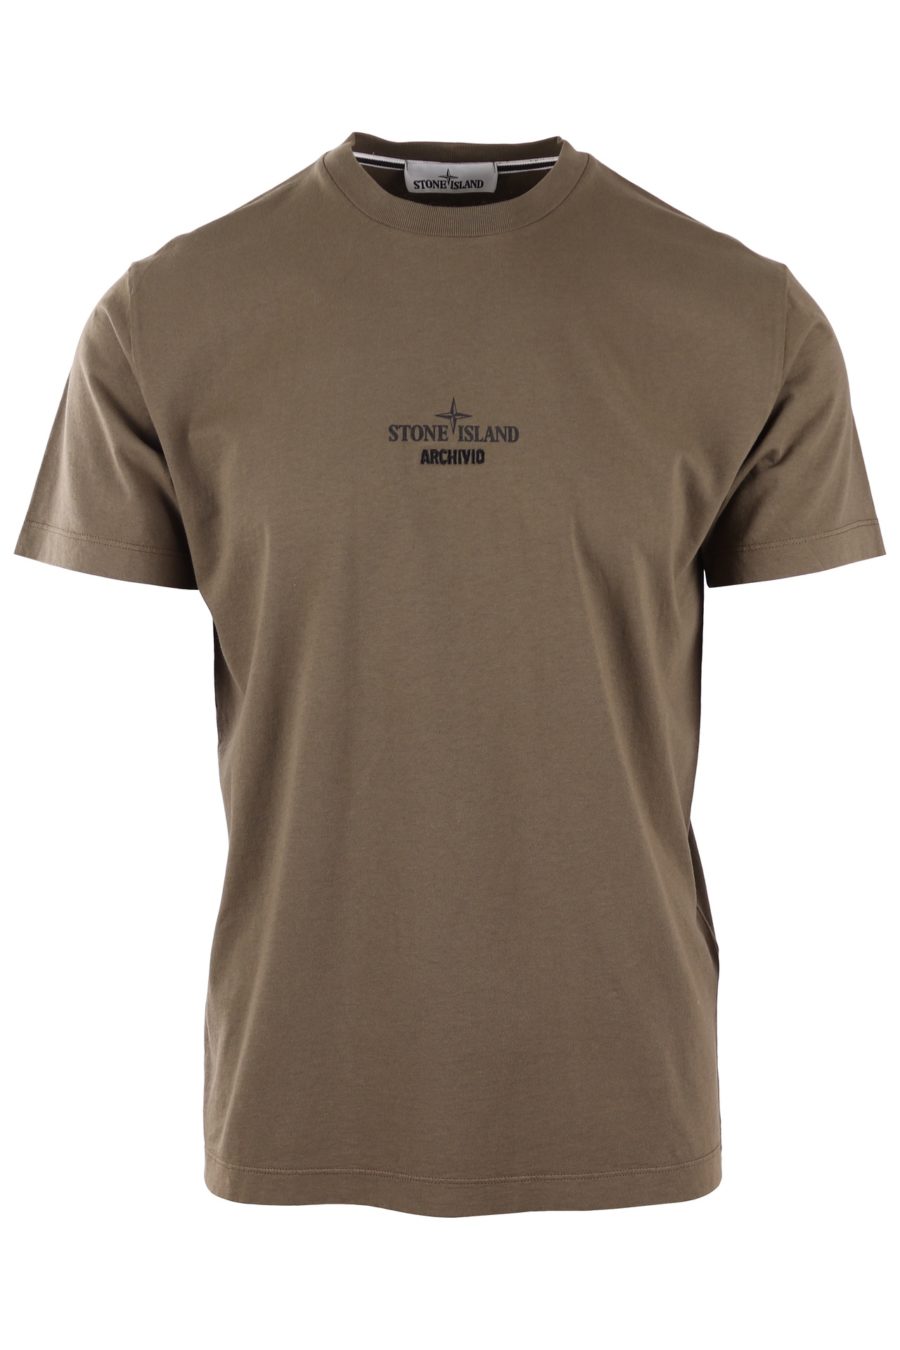 Camiseta Stone Island verde militar con logo "archivio" - 8dc94f6327d3864625f3278522f969706e822ce7